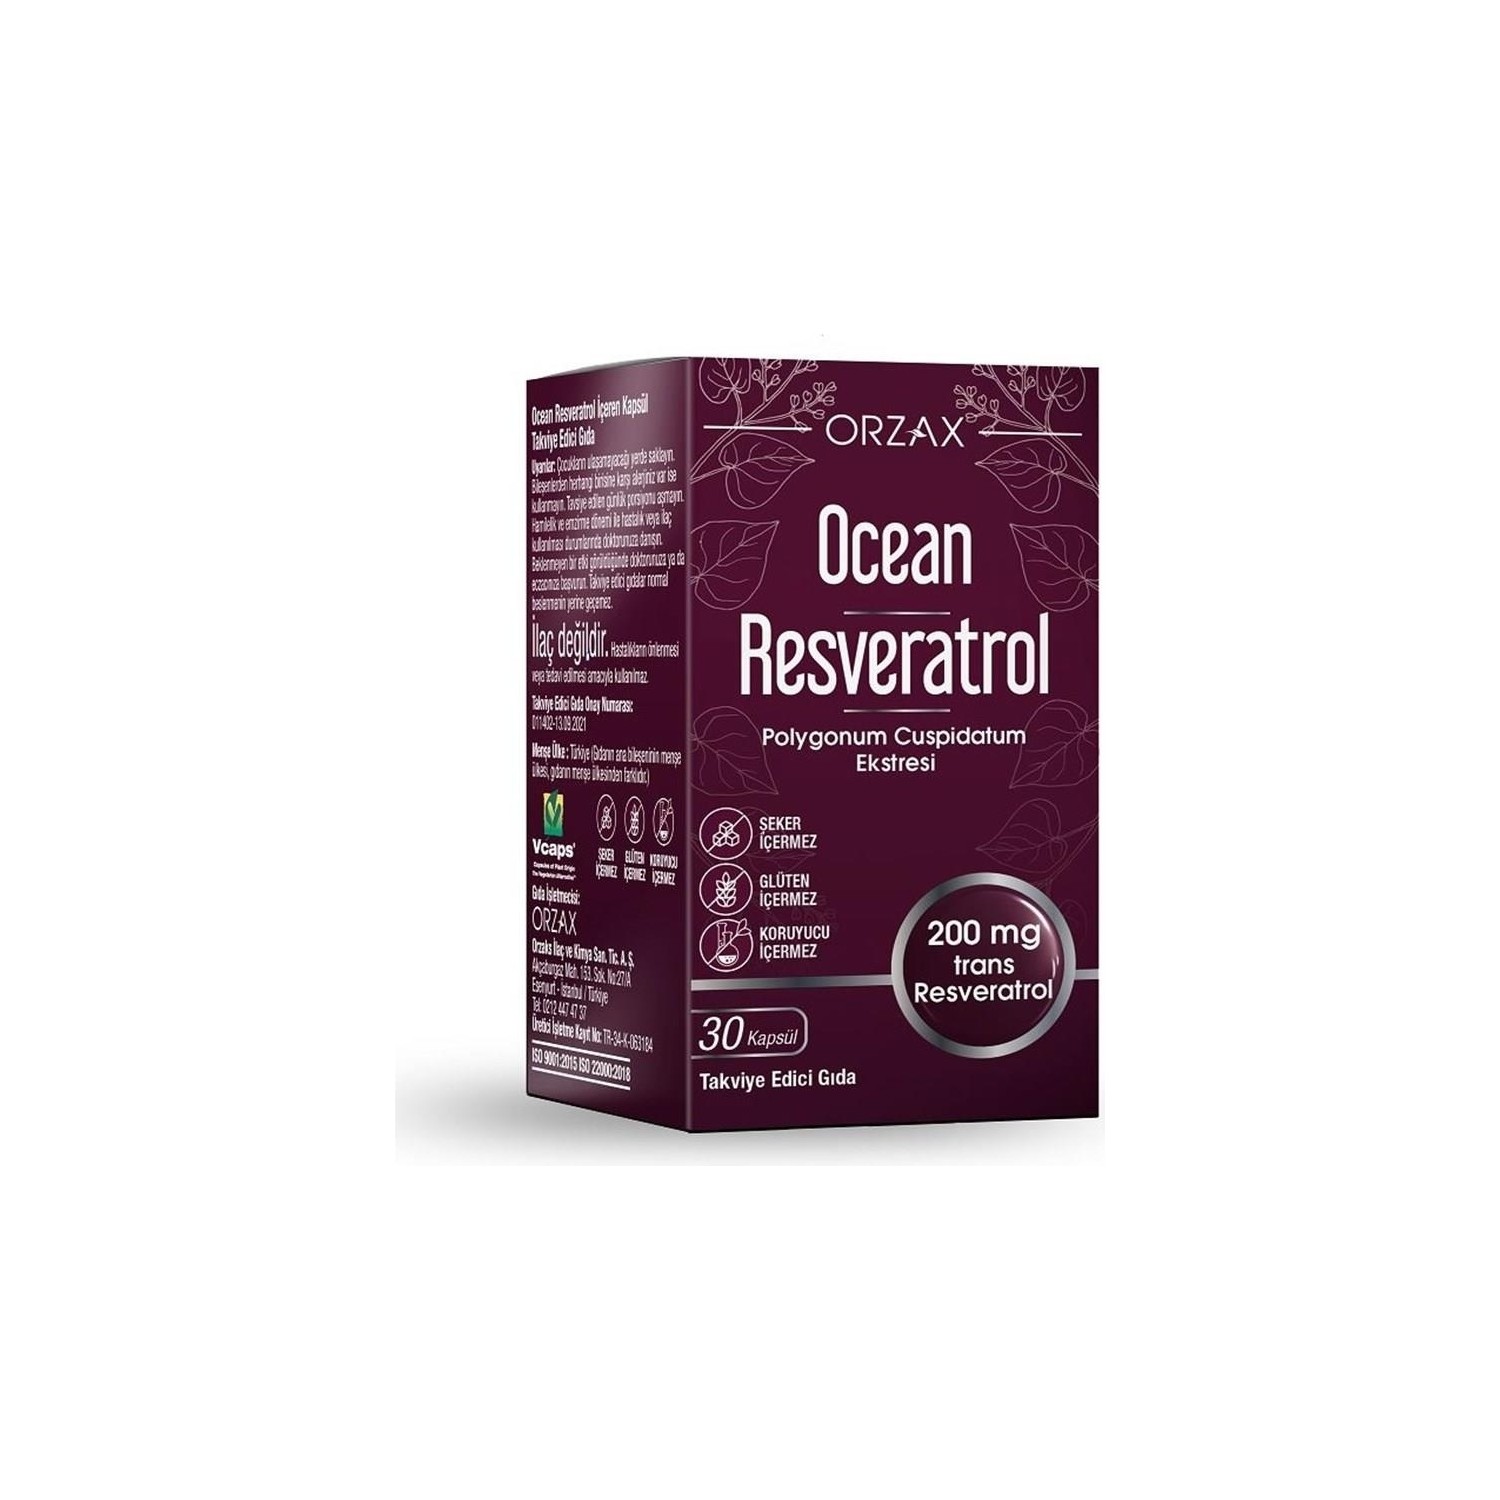 Ресвератрол Ocean 200 мг, 30 капсул янтарная кислота 30 капсул по 200 мг